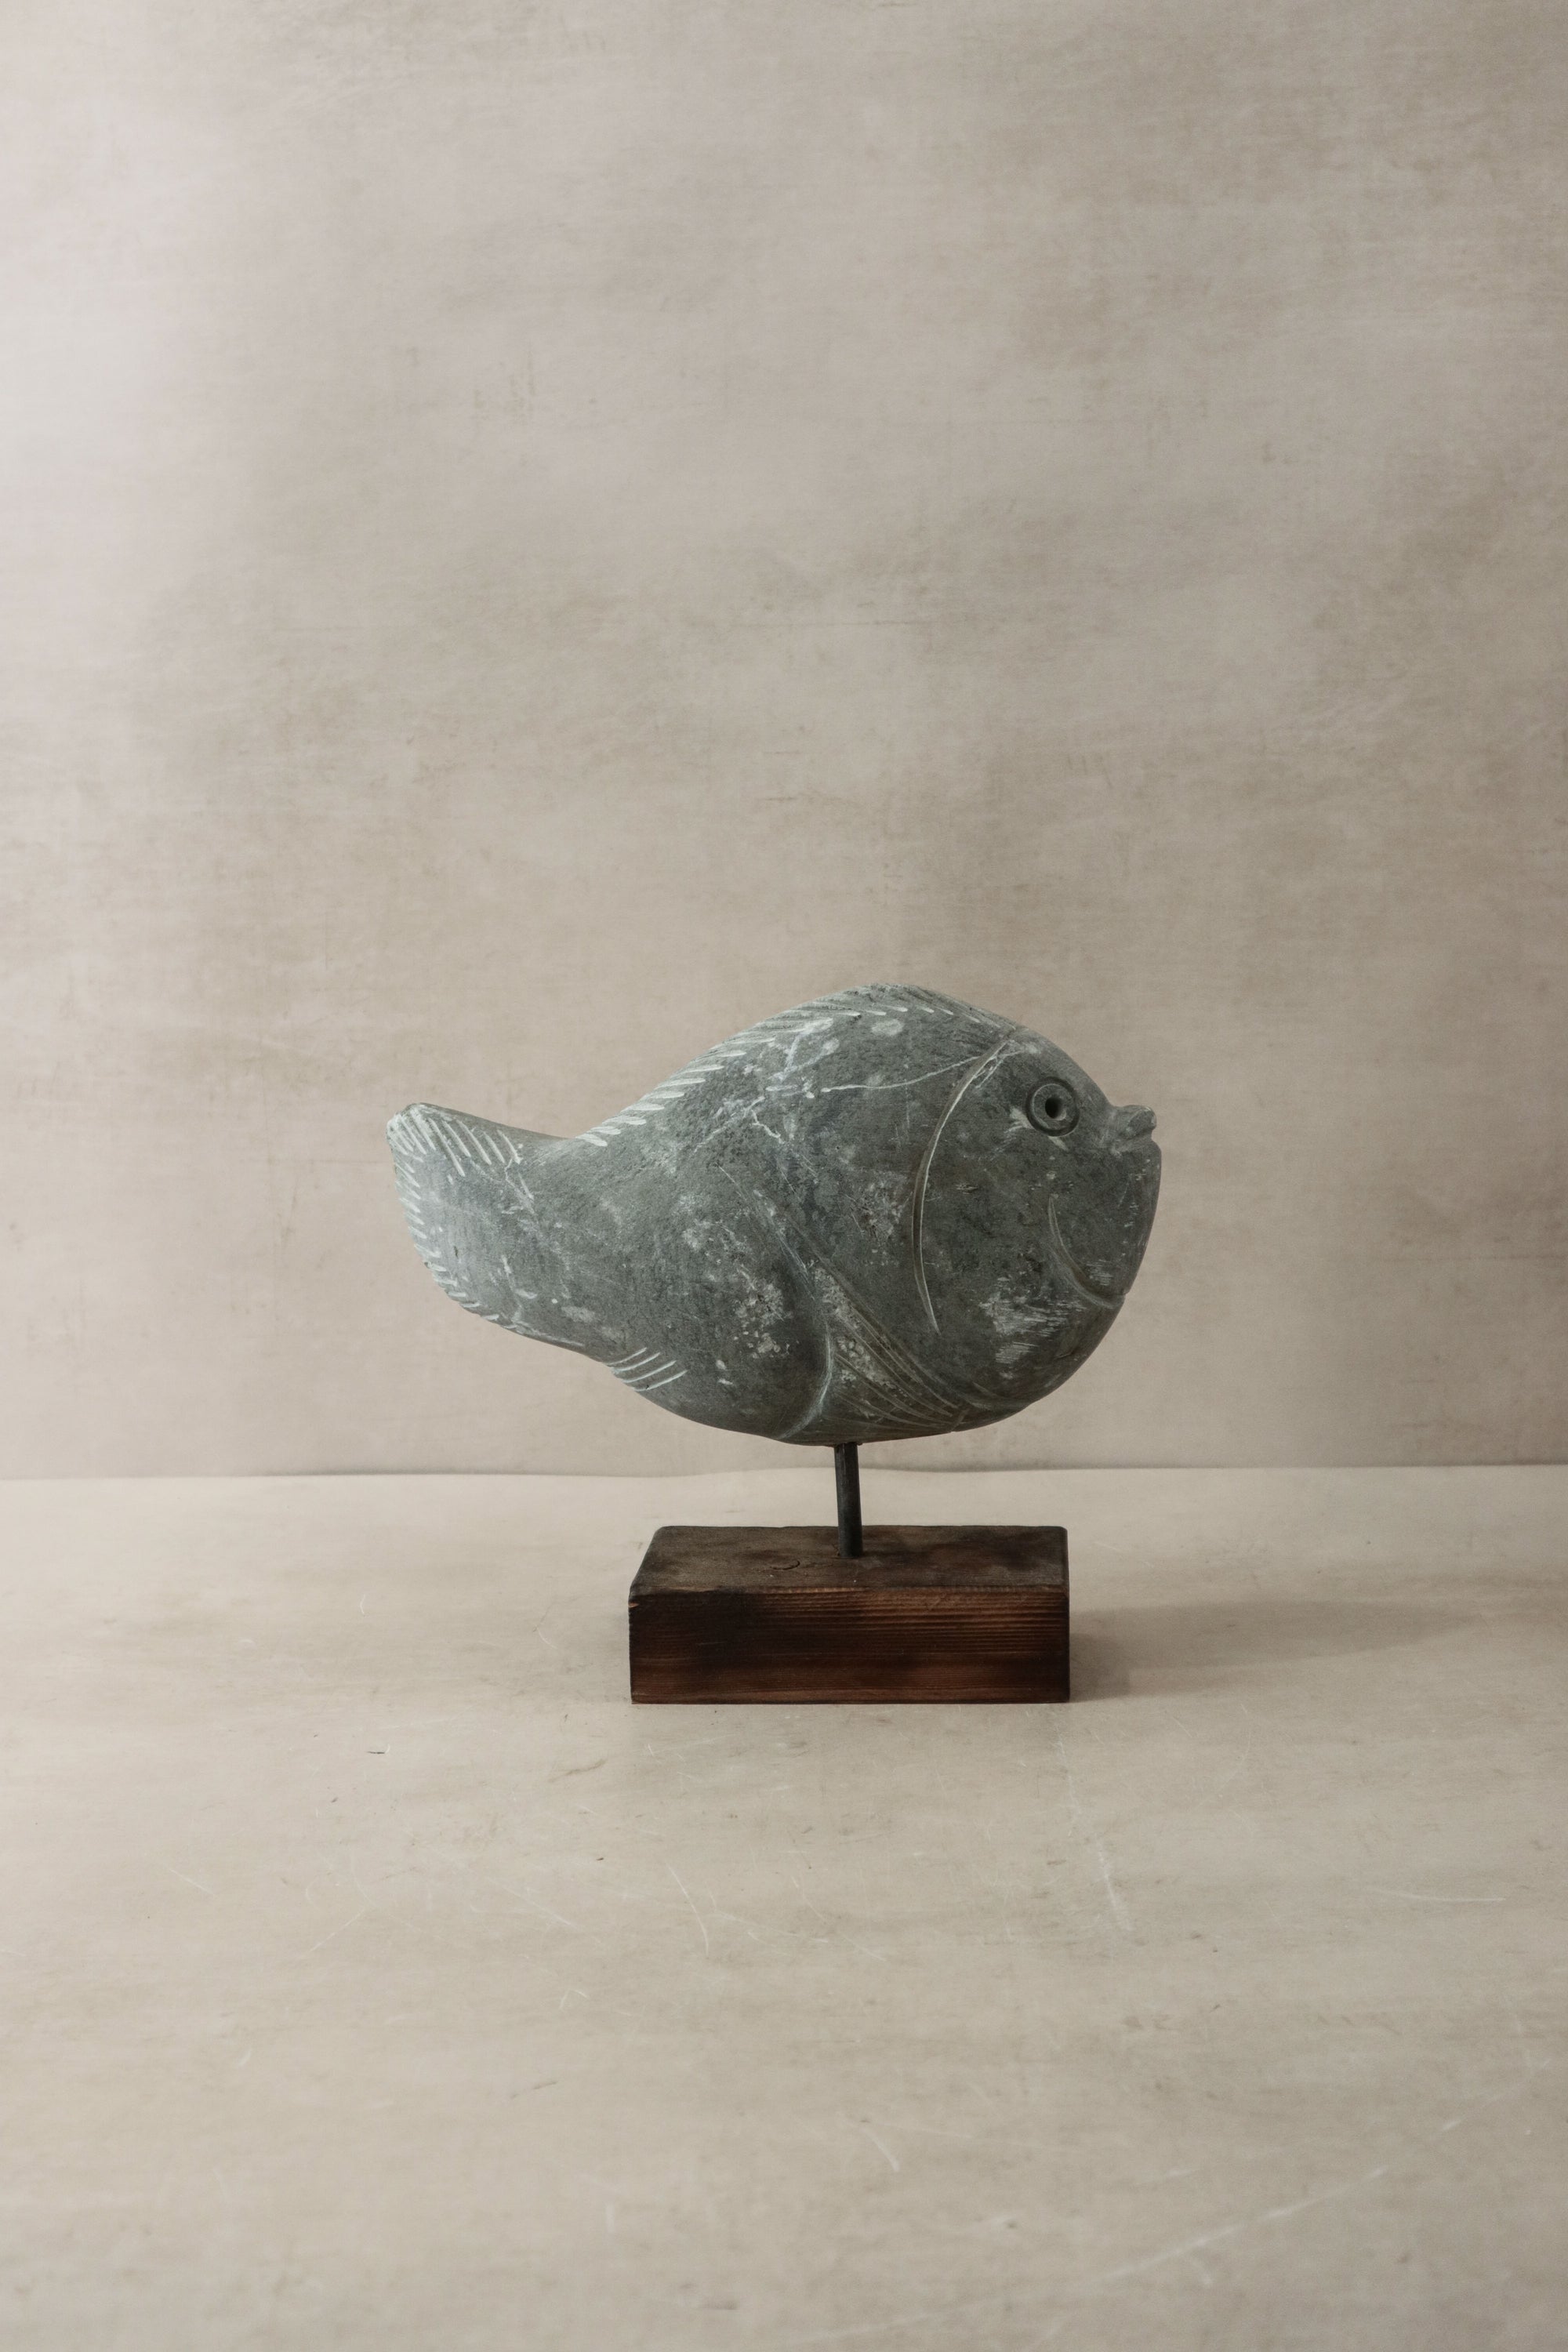 Stone Fish Sculpture - Zimbabwe - 30.9